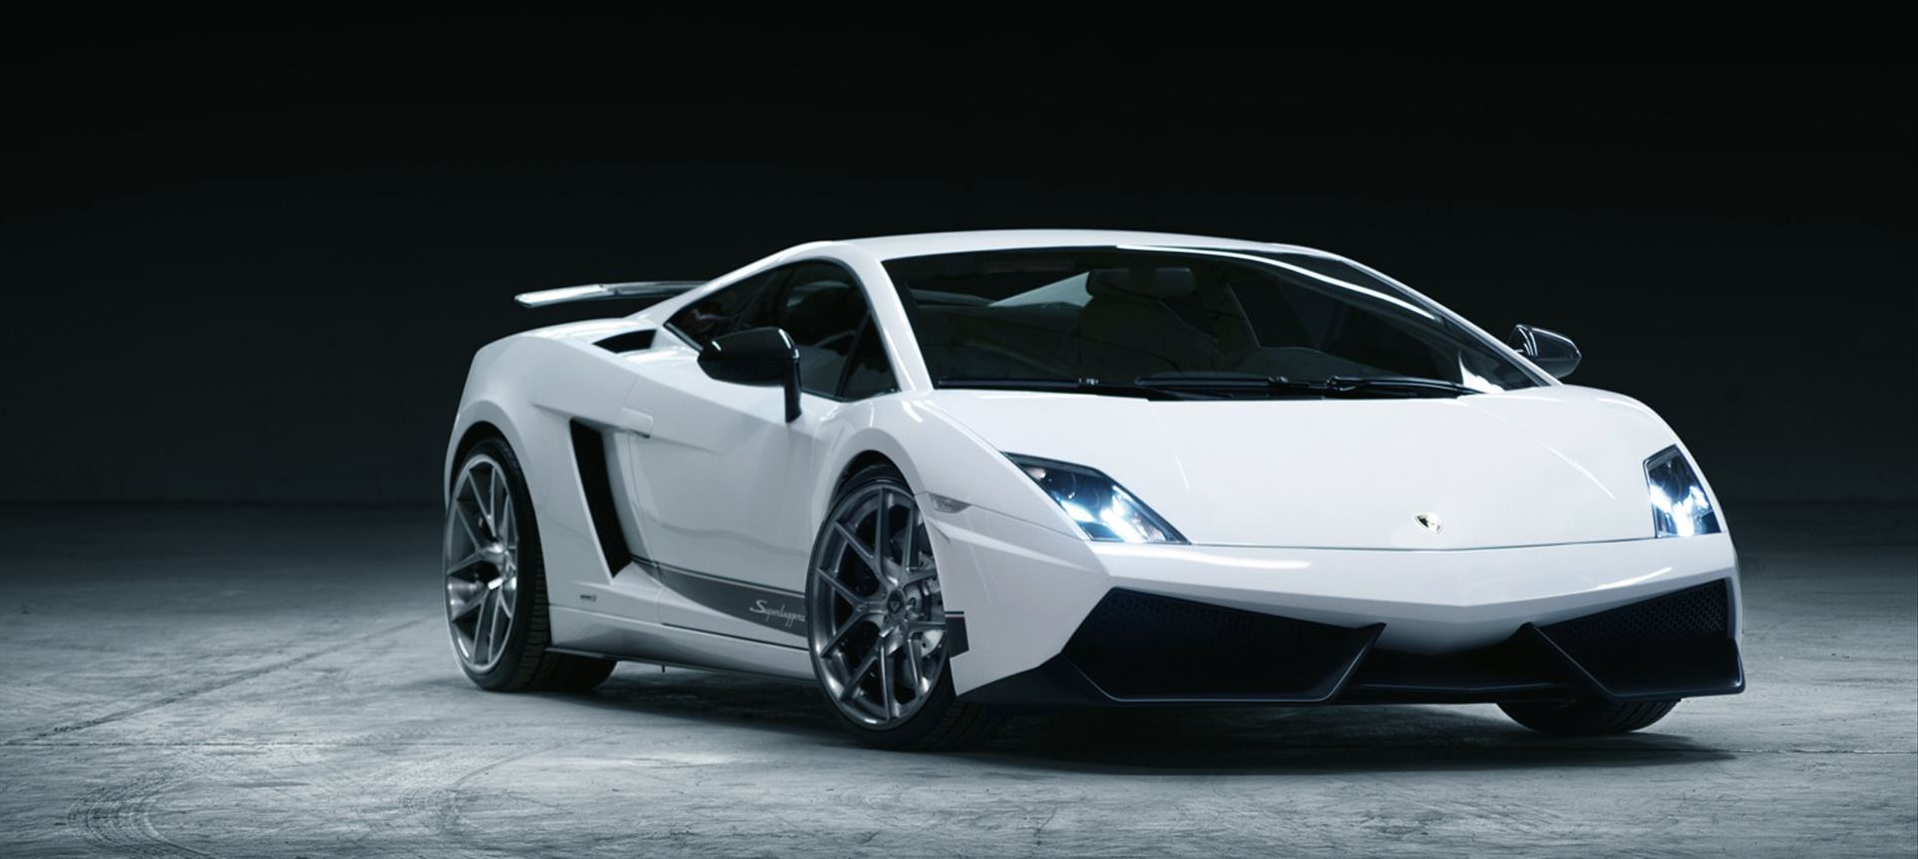 Lamborghini Gallardo Models